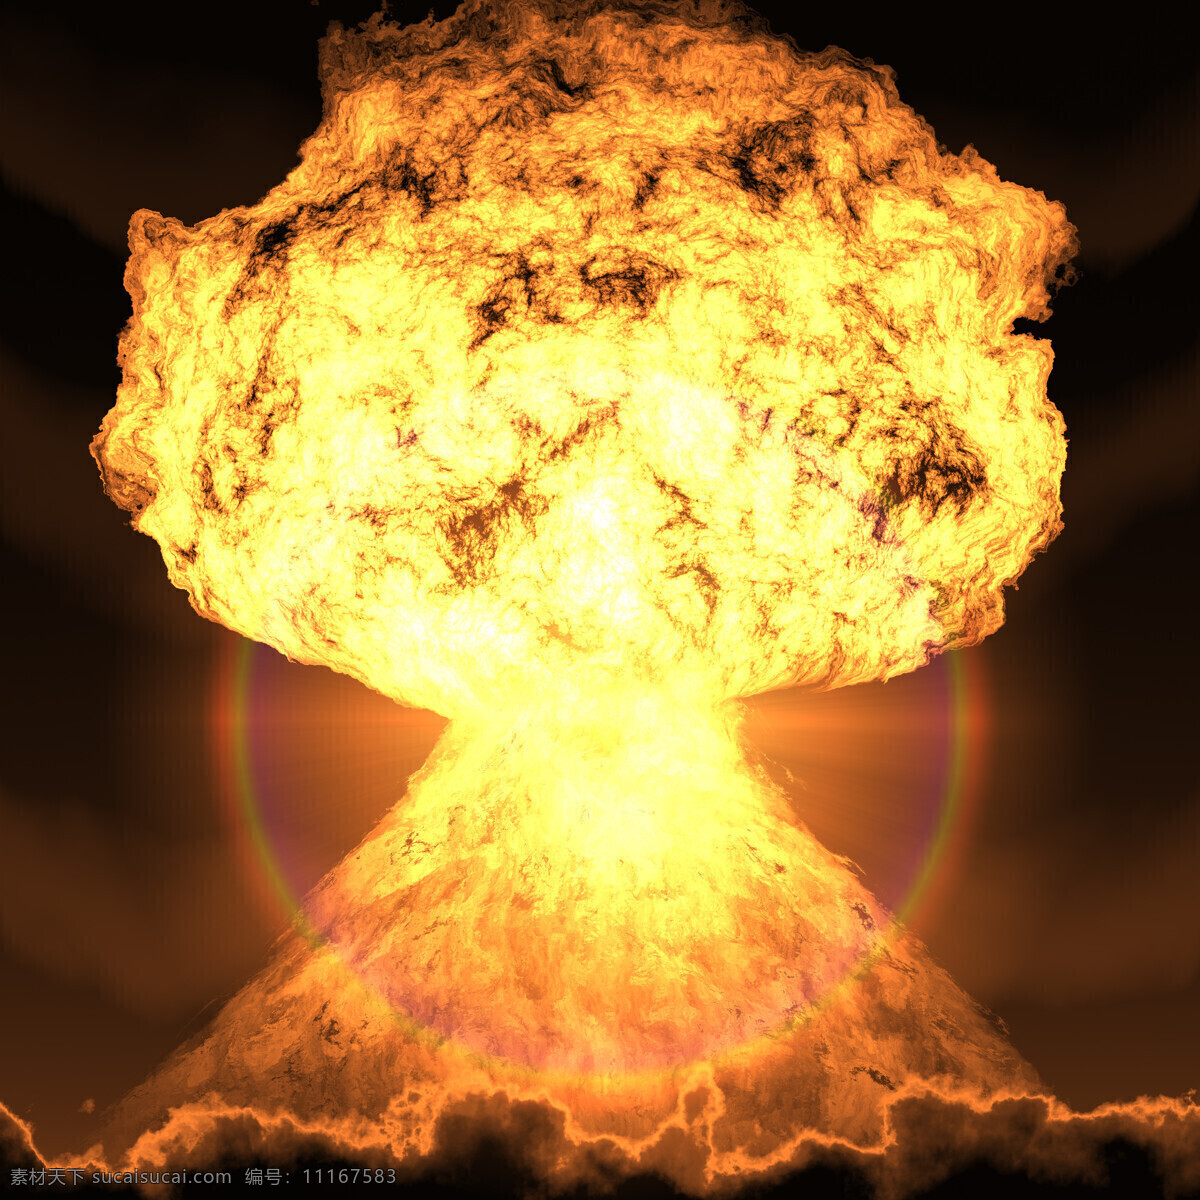 原子弹 爆炸 蘑菇云 光晕 原子弹爆炸 炸弹 核武器 核爆炸 其他类别 生活百科